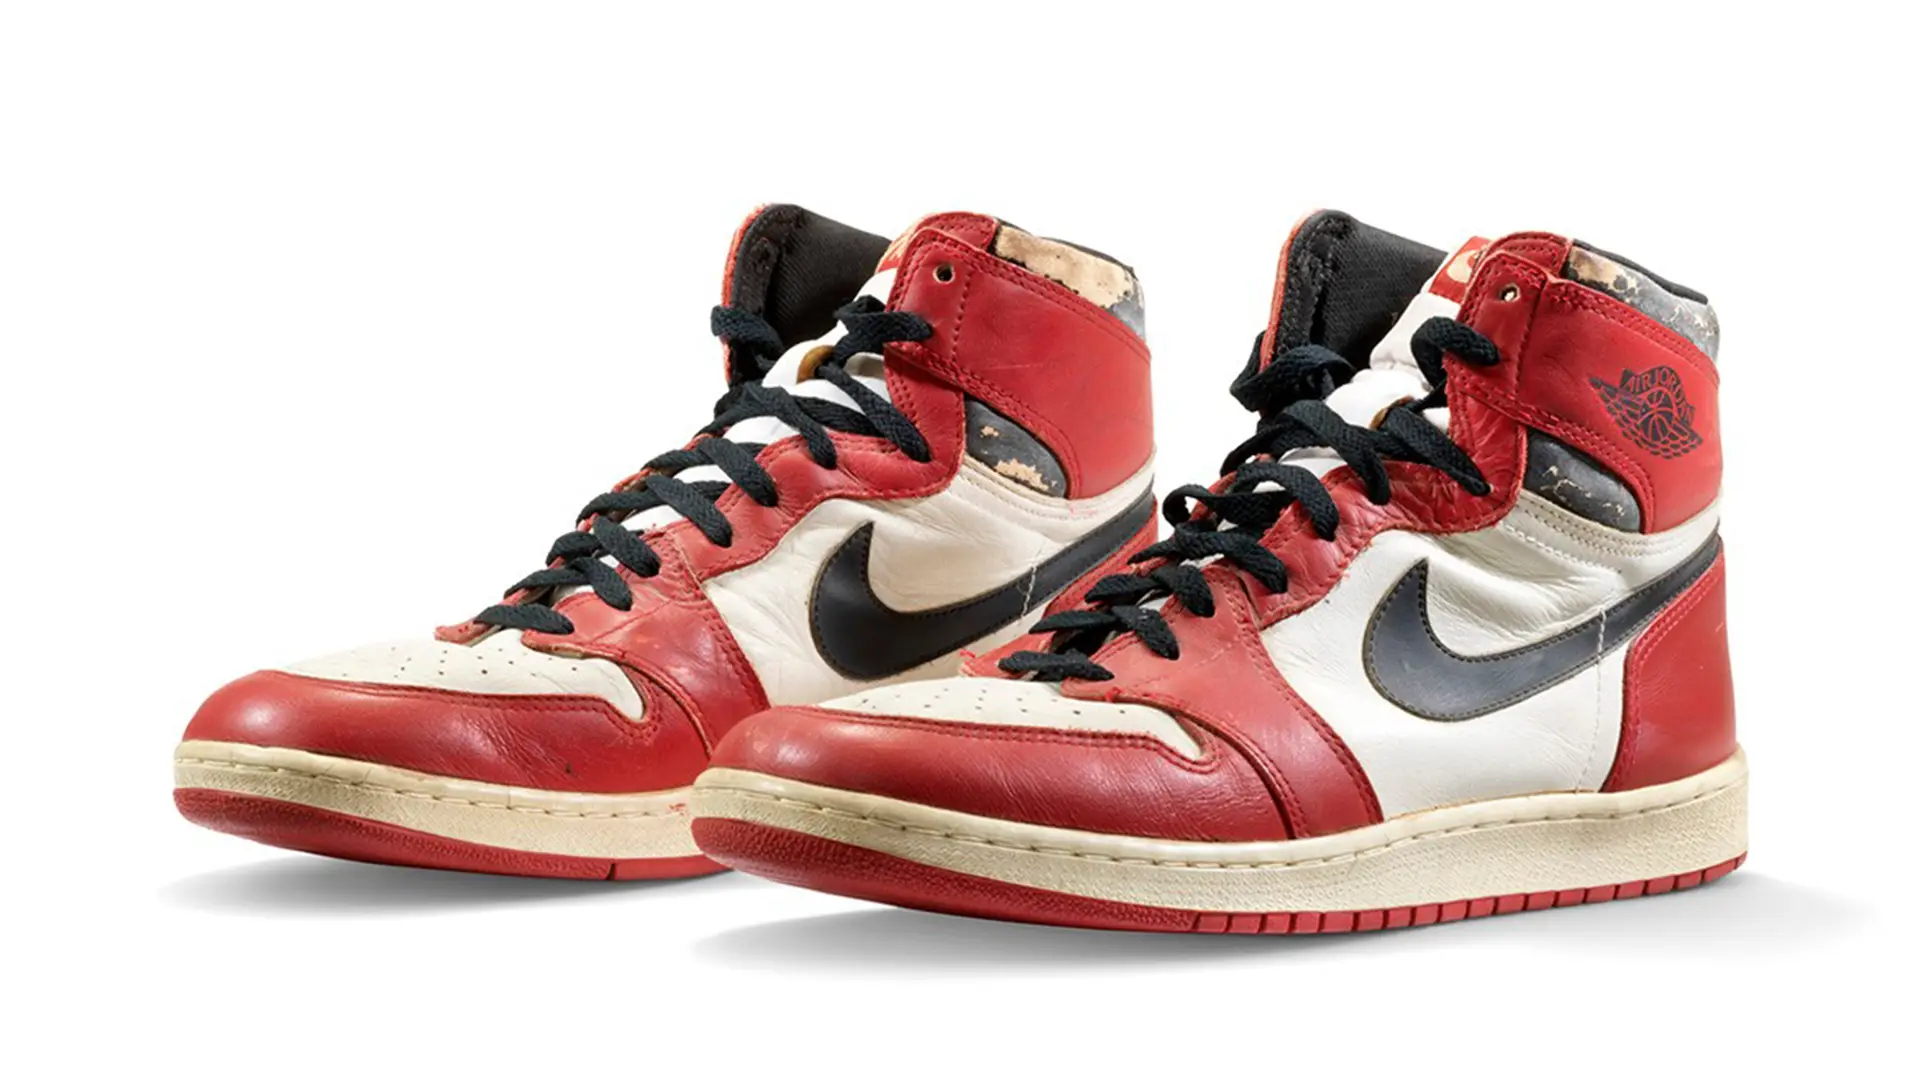 Top 10 Most Expensive Air Jordan Sneakers Ever Sold: Michael